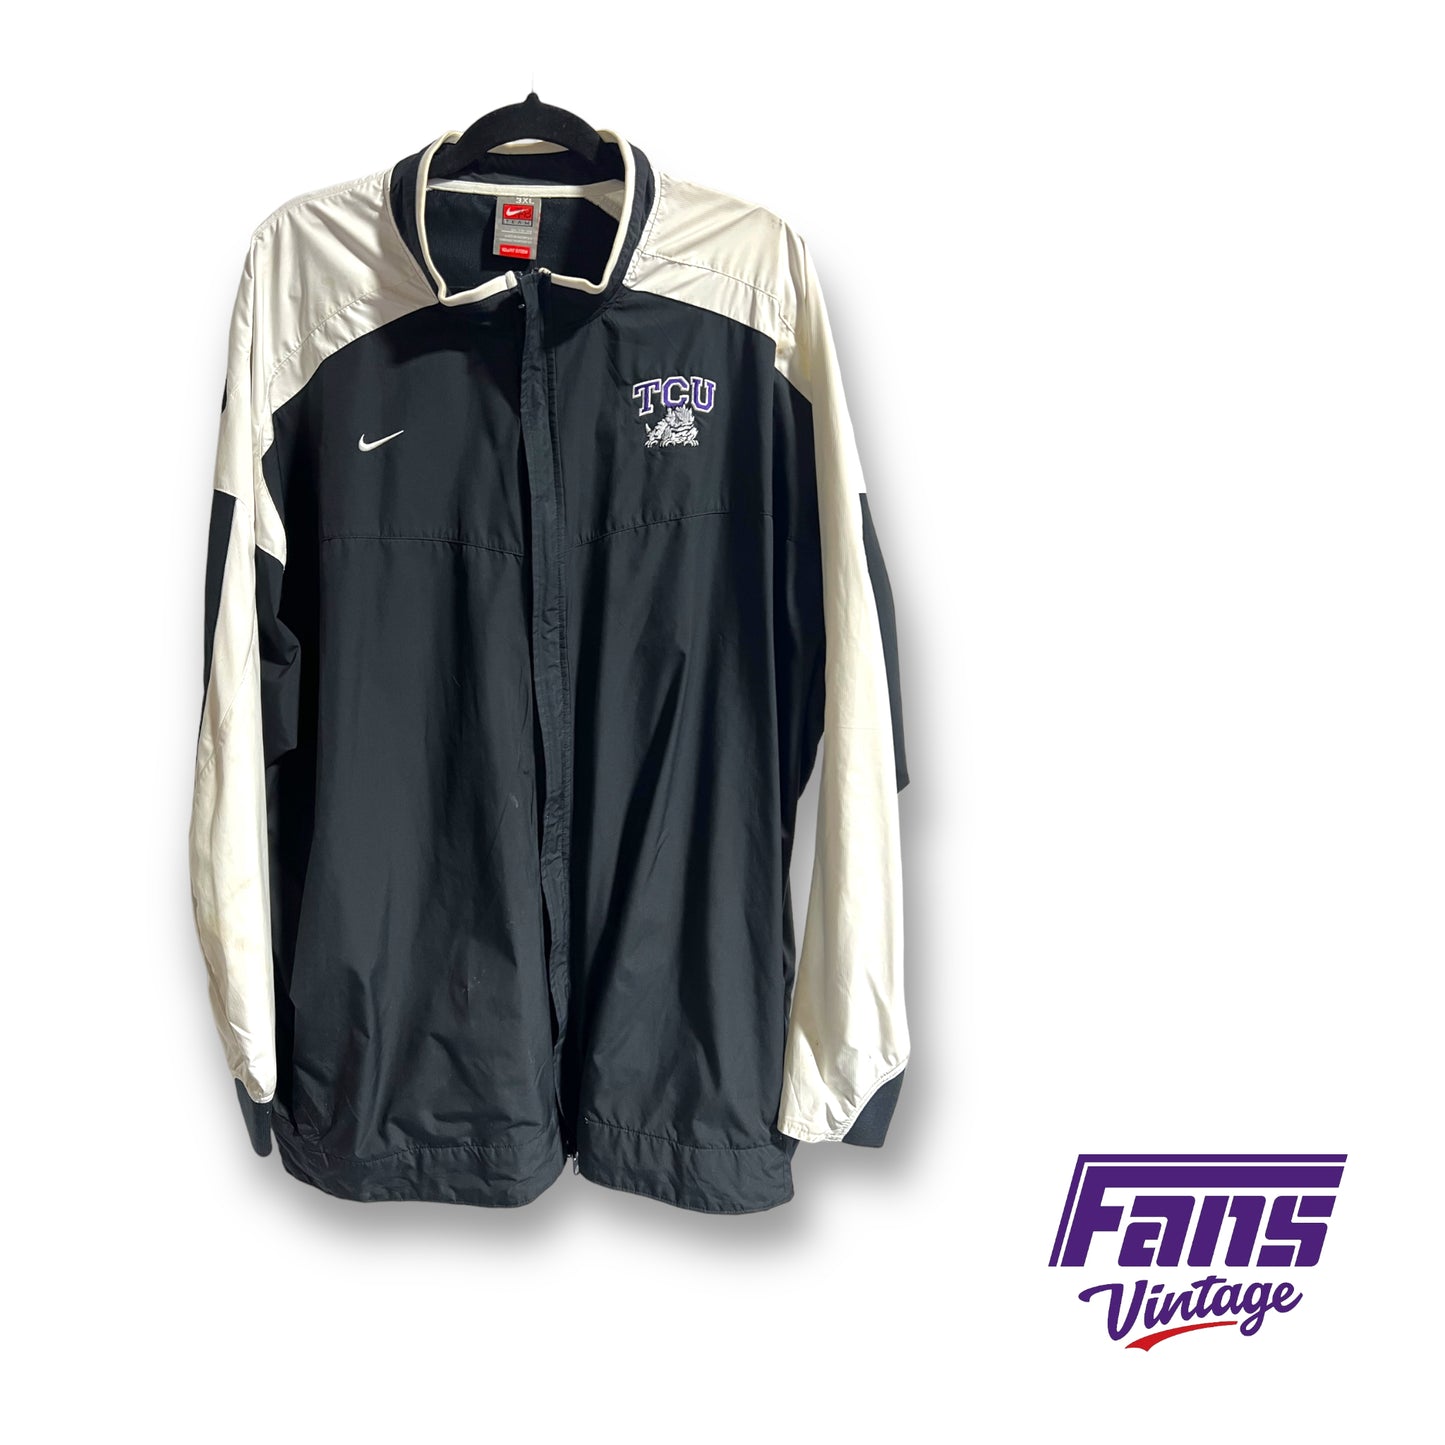 2010 Nike TCU Football team issued jacket